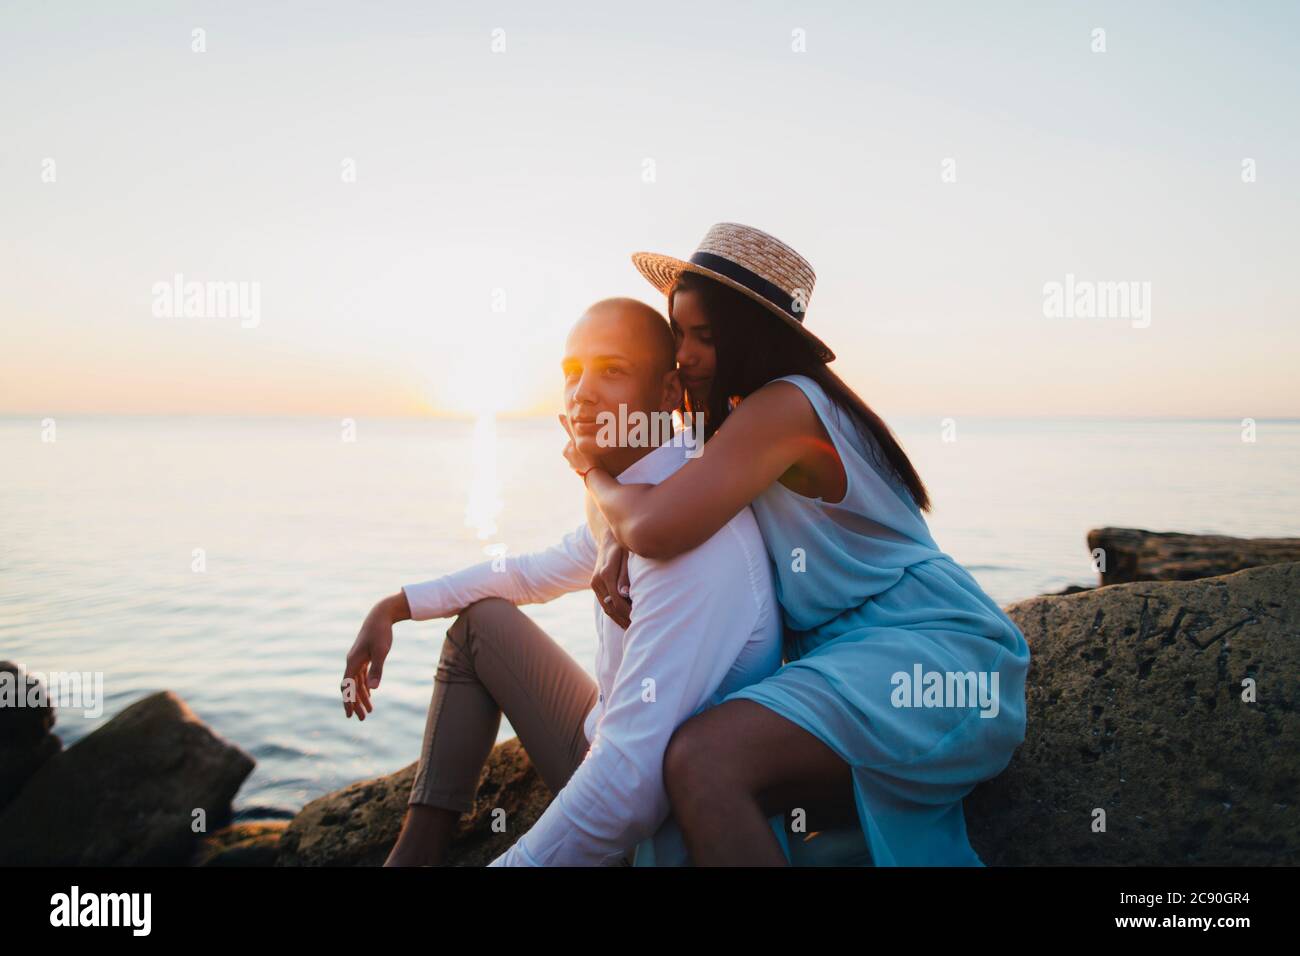 Romantic couple on beach at sunset Stock Photo